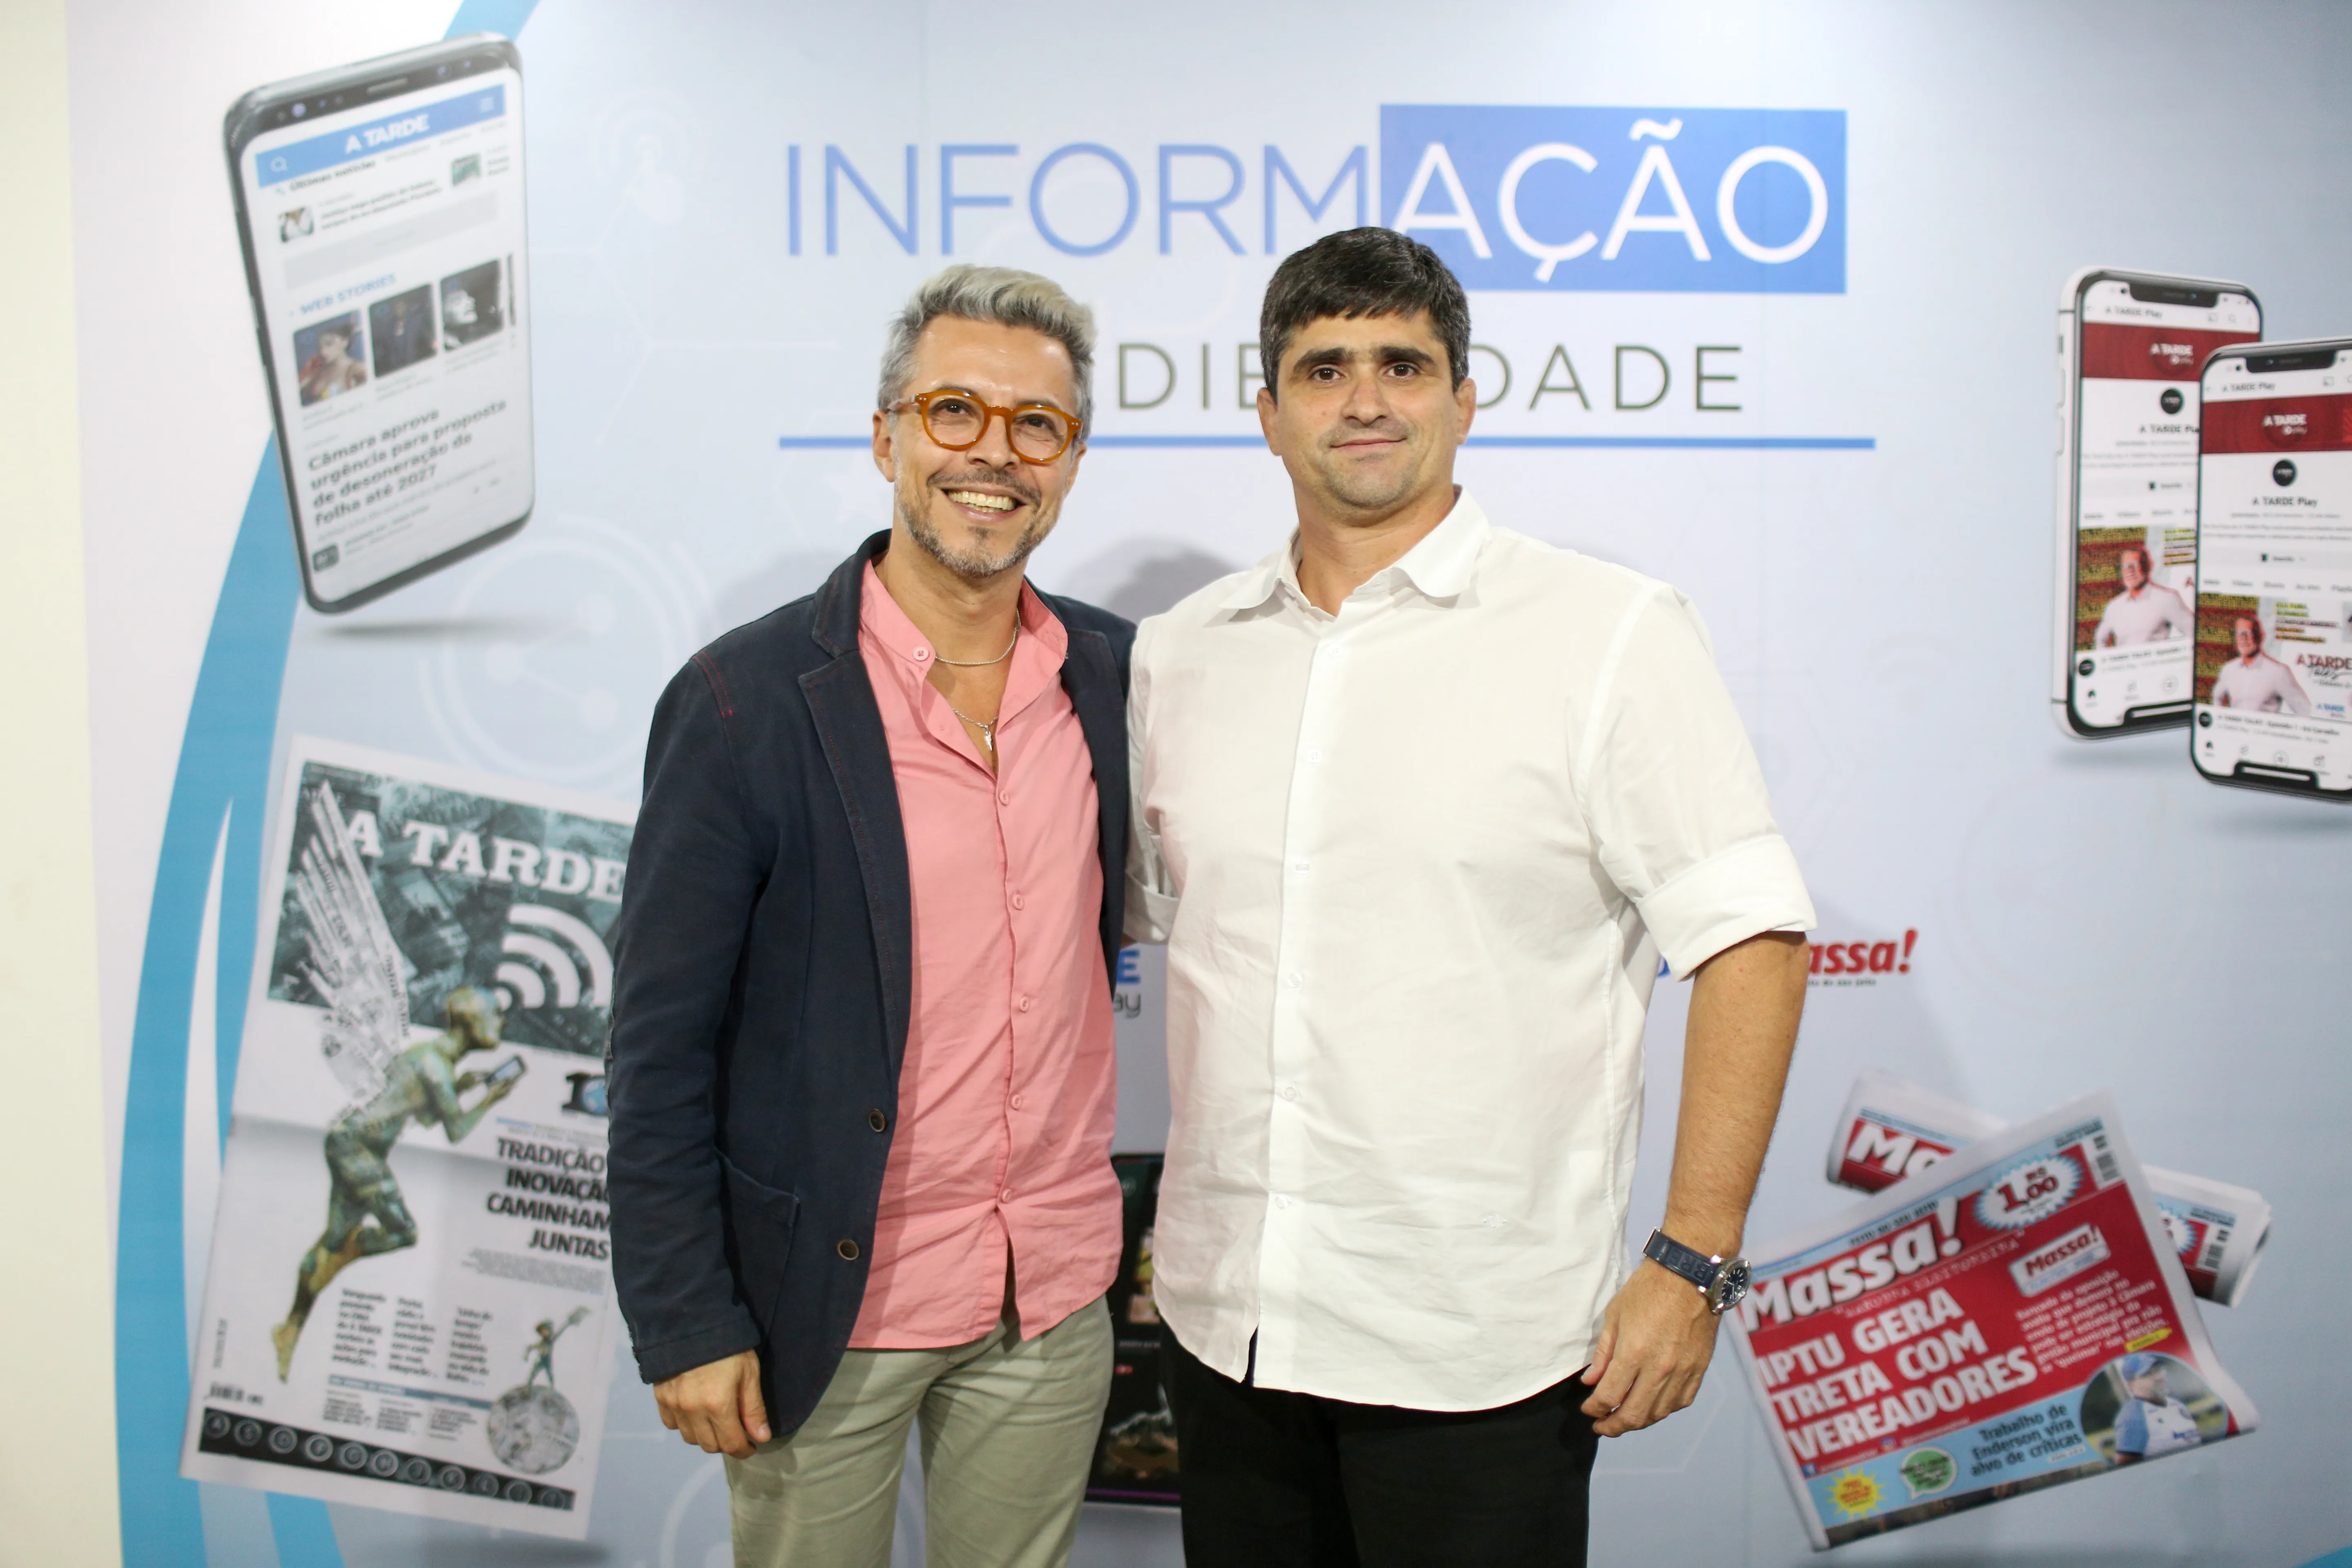 Bruno Monteiro conversou com o presidente do Grupo A TARDE, João de Mello Leitão